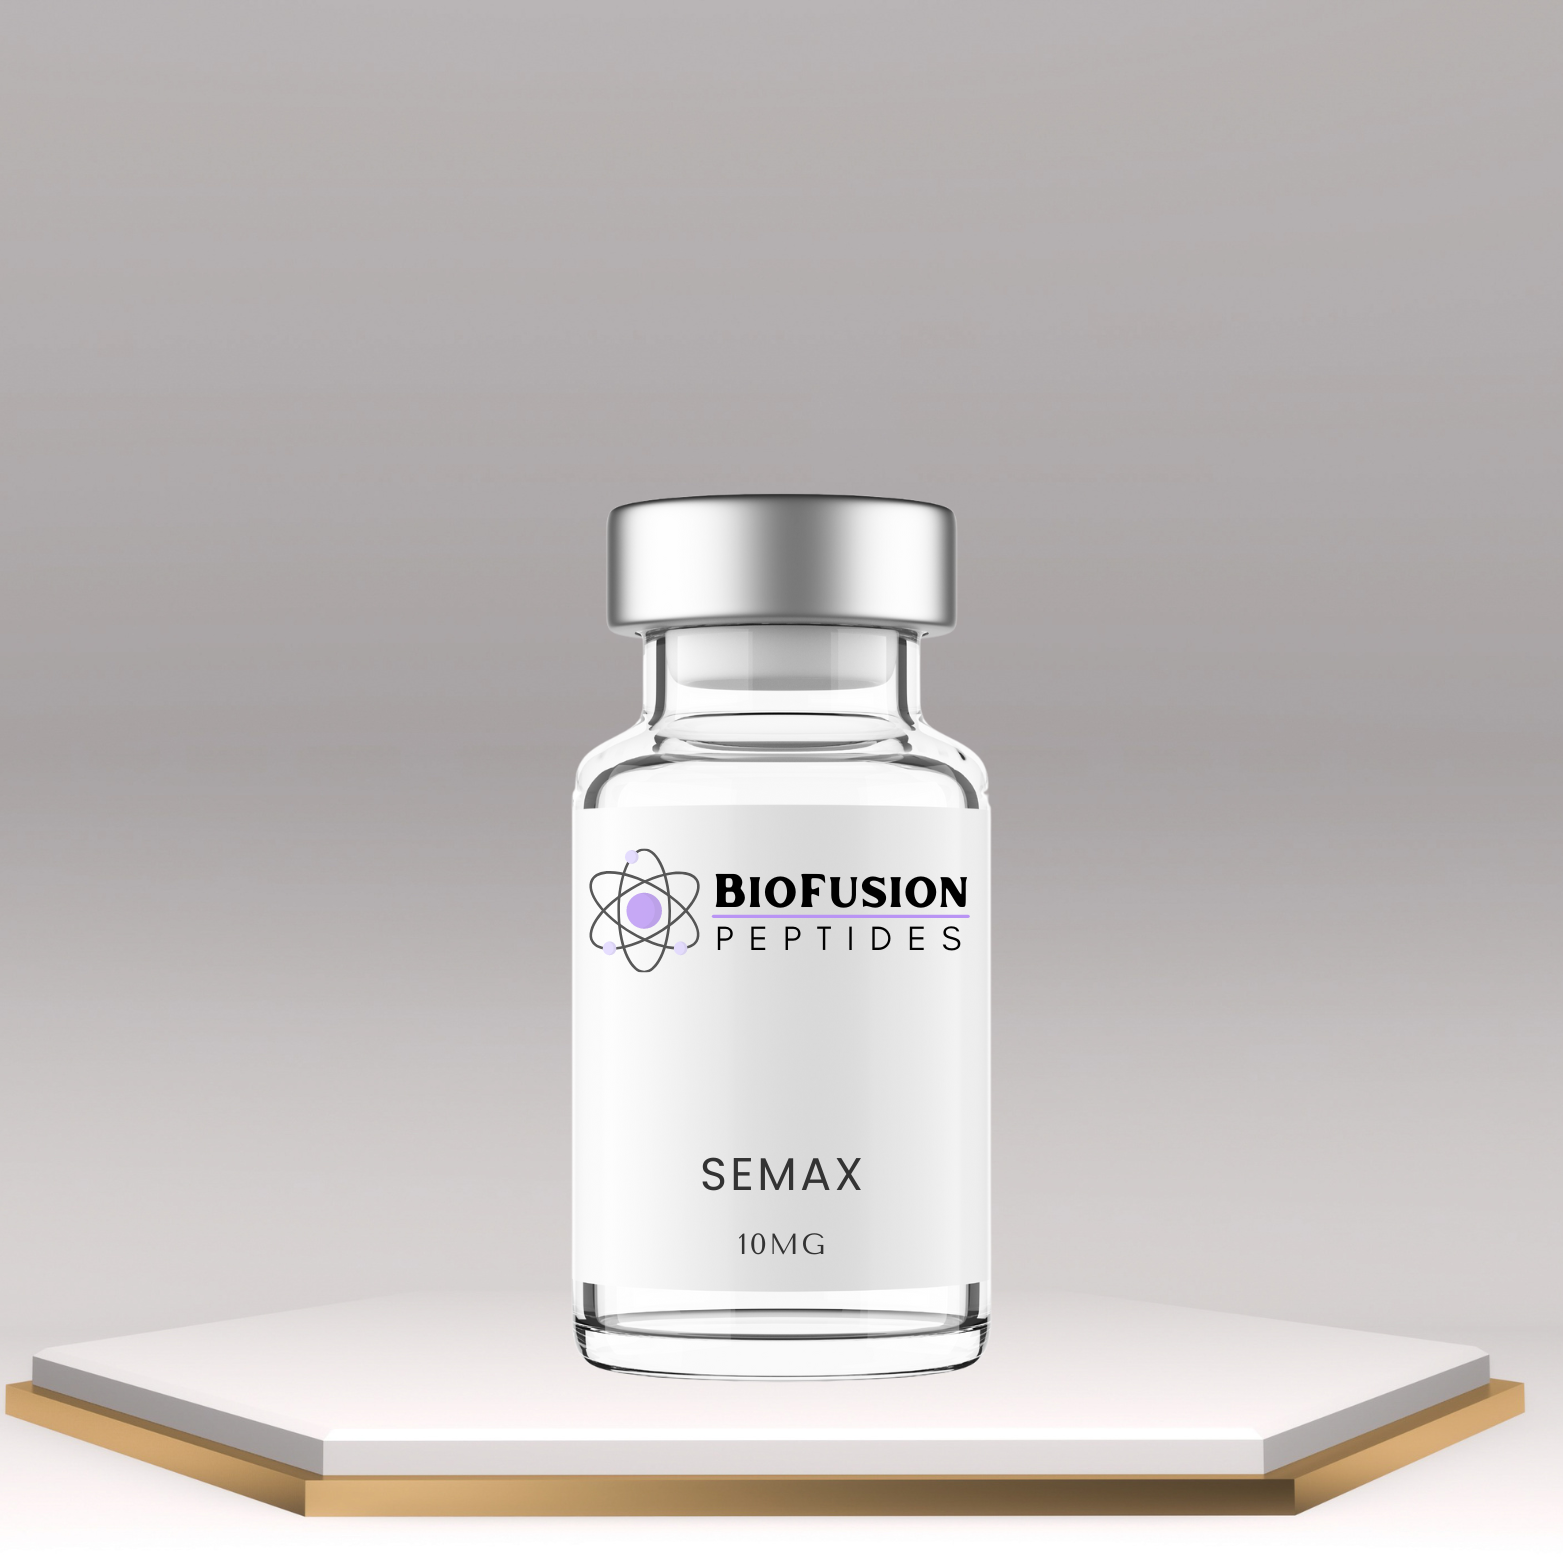 BioFusion Peptides Semax (10MG) vial